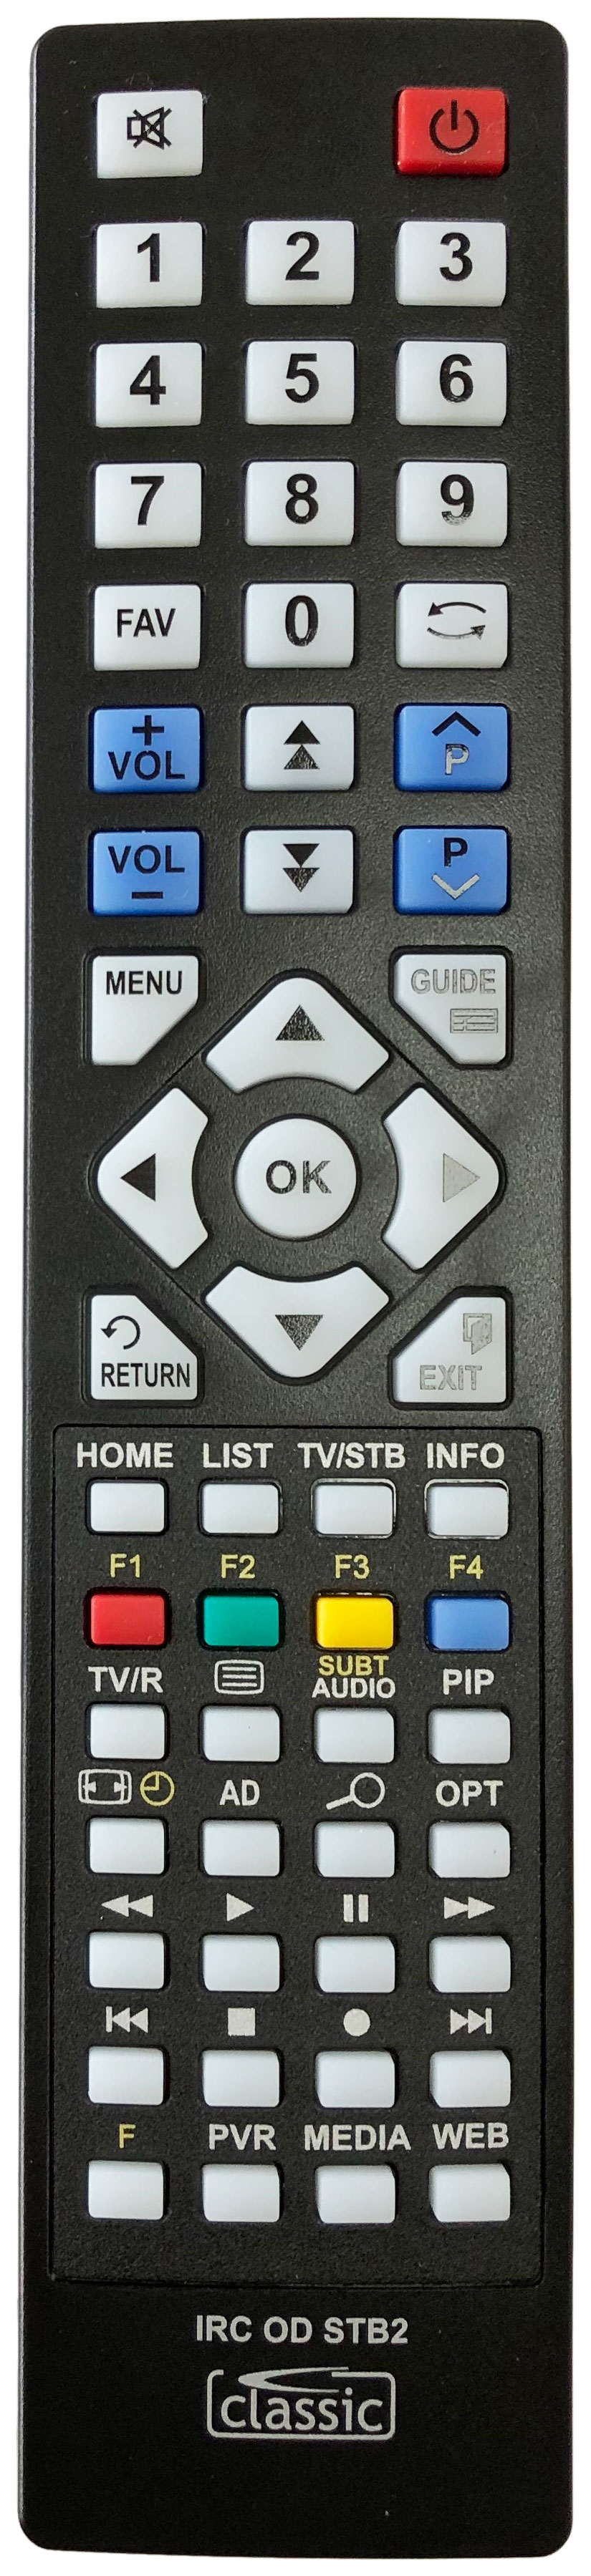 SAGEM DVR6280GL-UK Remote Control